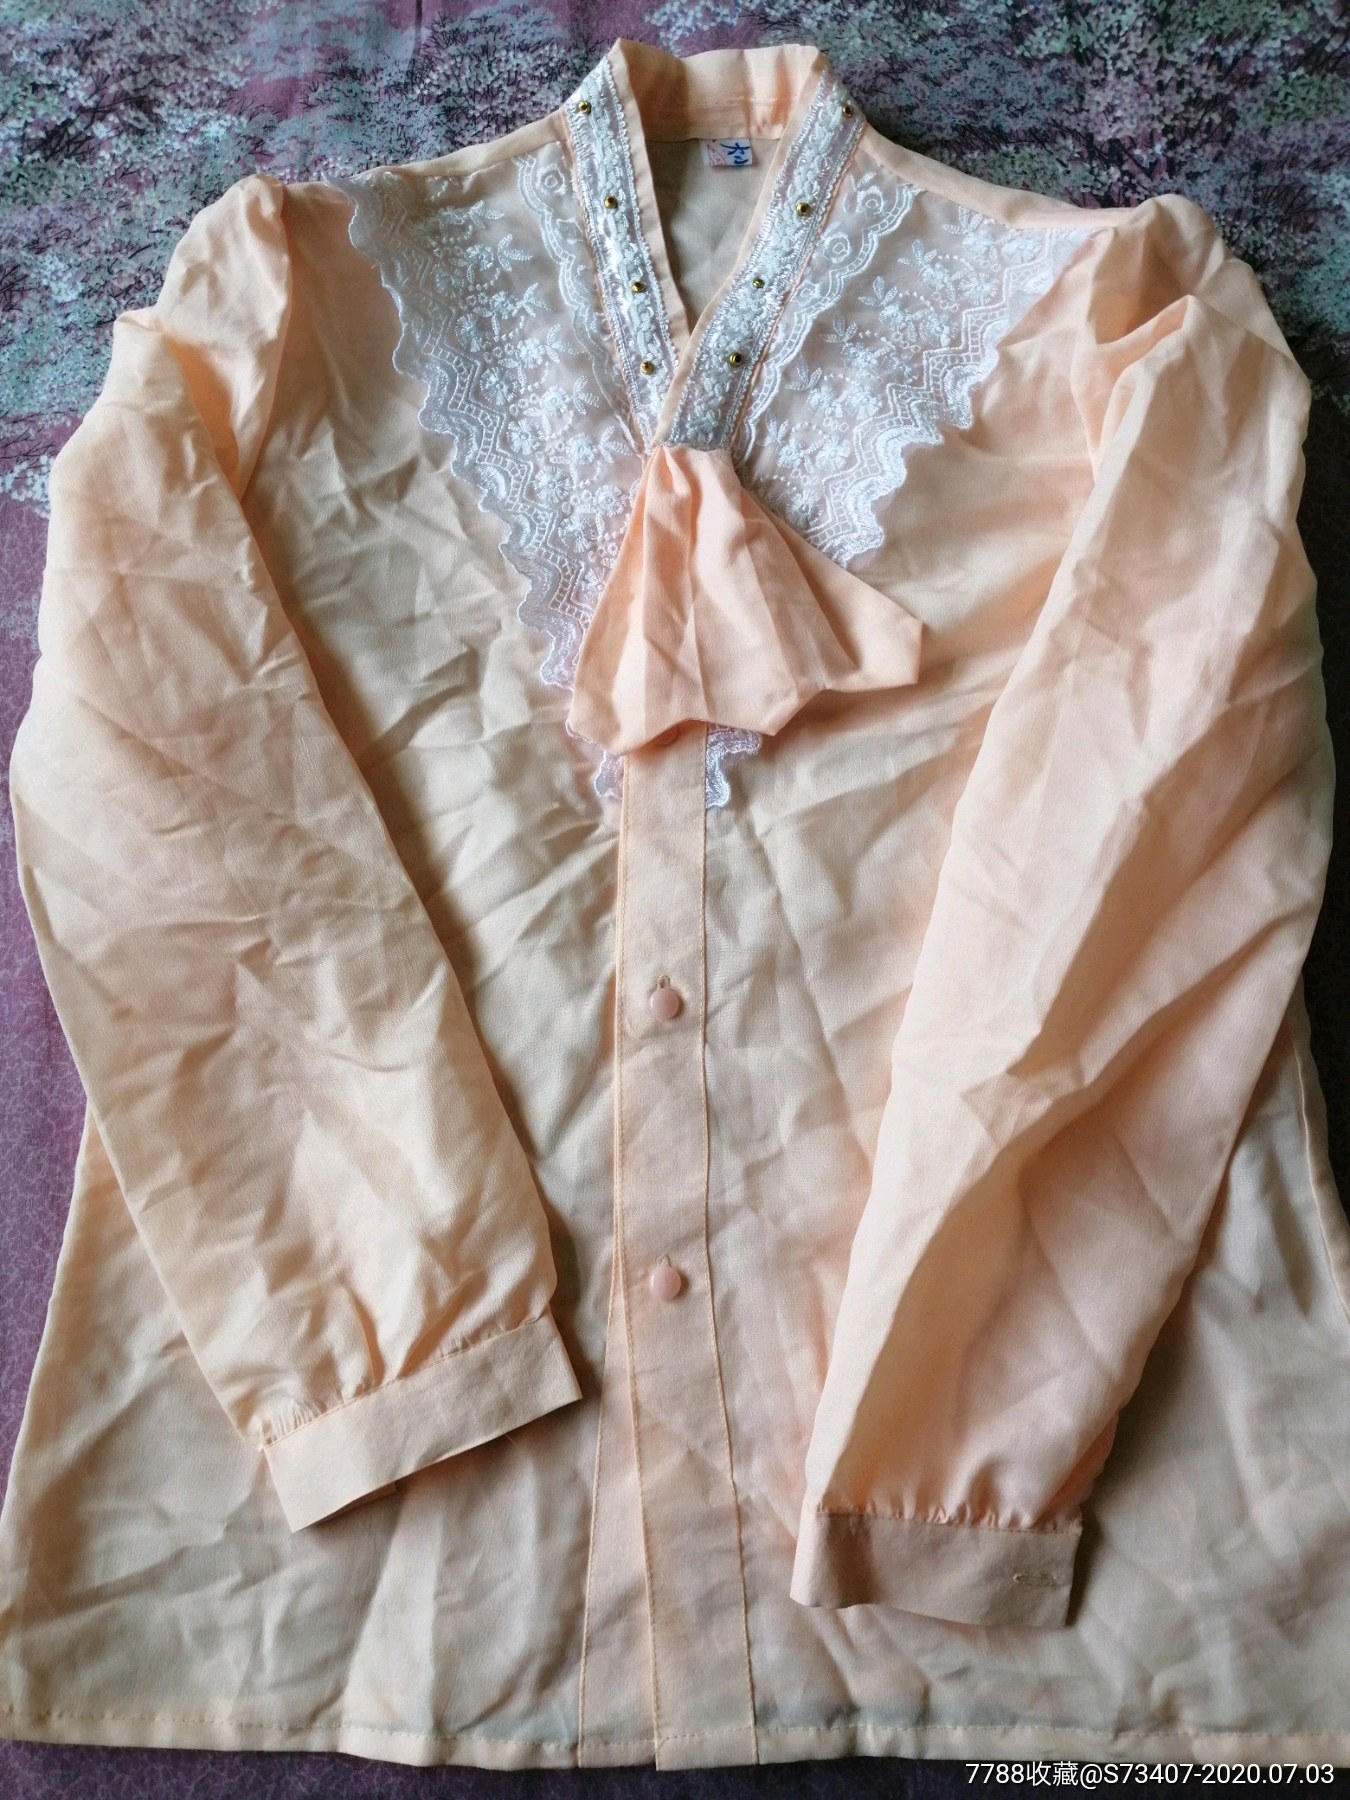 衬衫,其他服饰,民族服装/戏服,八十年代(20世纪),女性